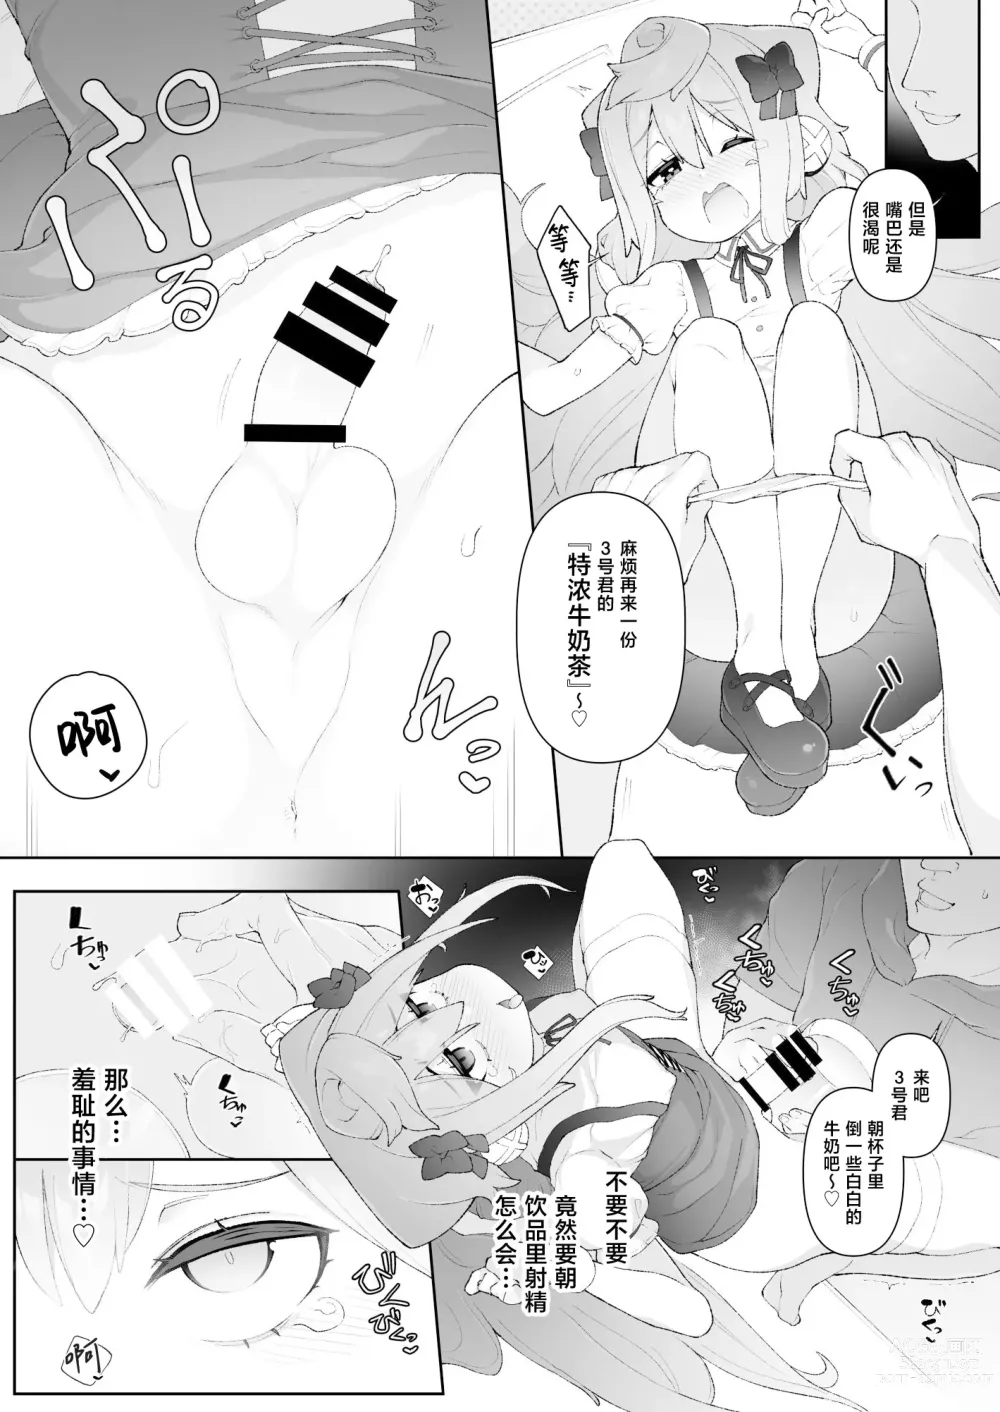 Page 7 of doujinshi HakaDol 3-gou-kun Tokusei Himitsu no Ura Menu!!